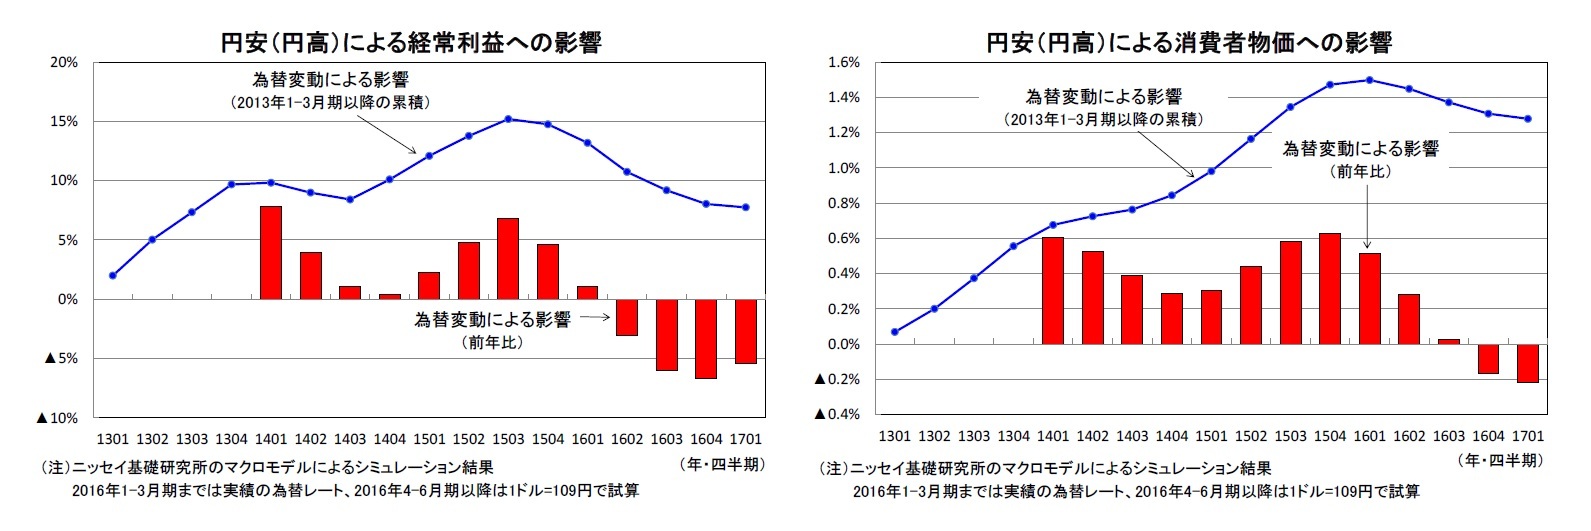 円安（円高）による経常利益への影響/円安（円高）による消費者物価への影響